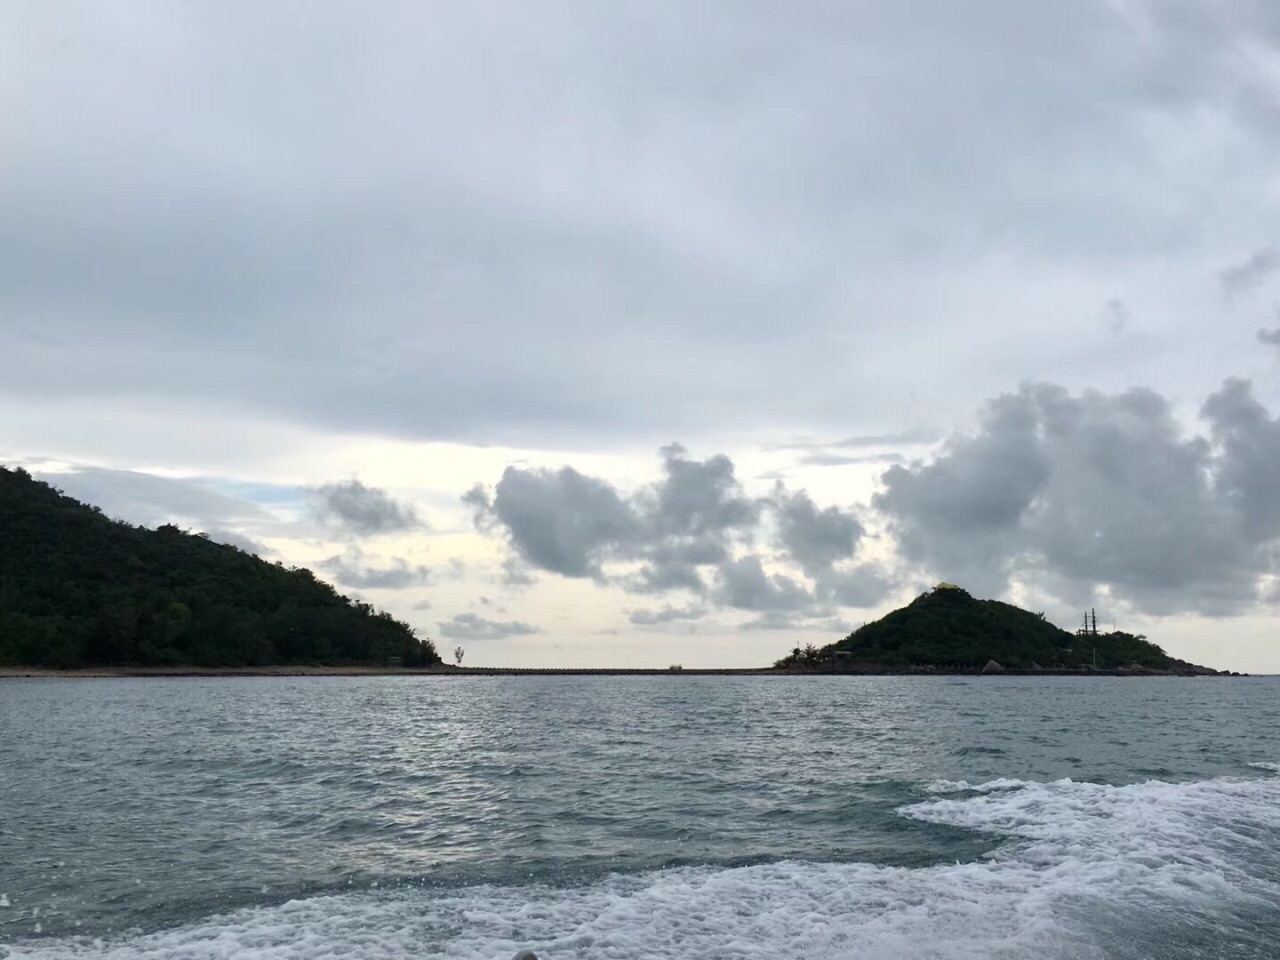 西岛更因与东岛恰似三亚湾碧波中鼓浪而行的二只玳瑁,被以"波浮双玳"